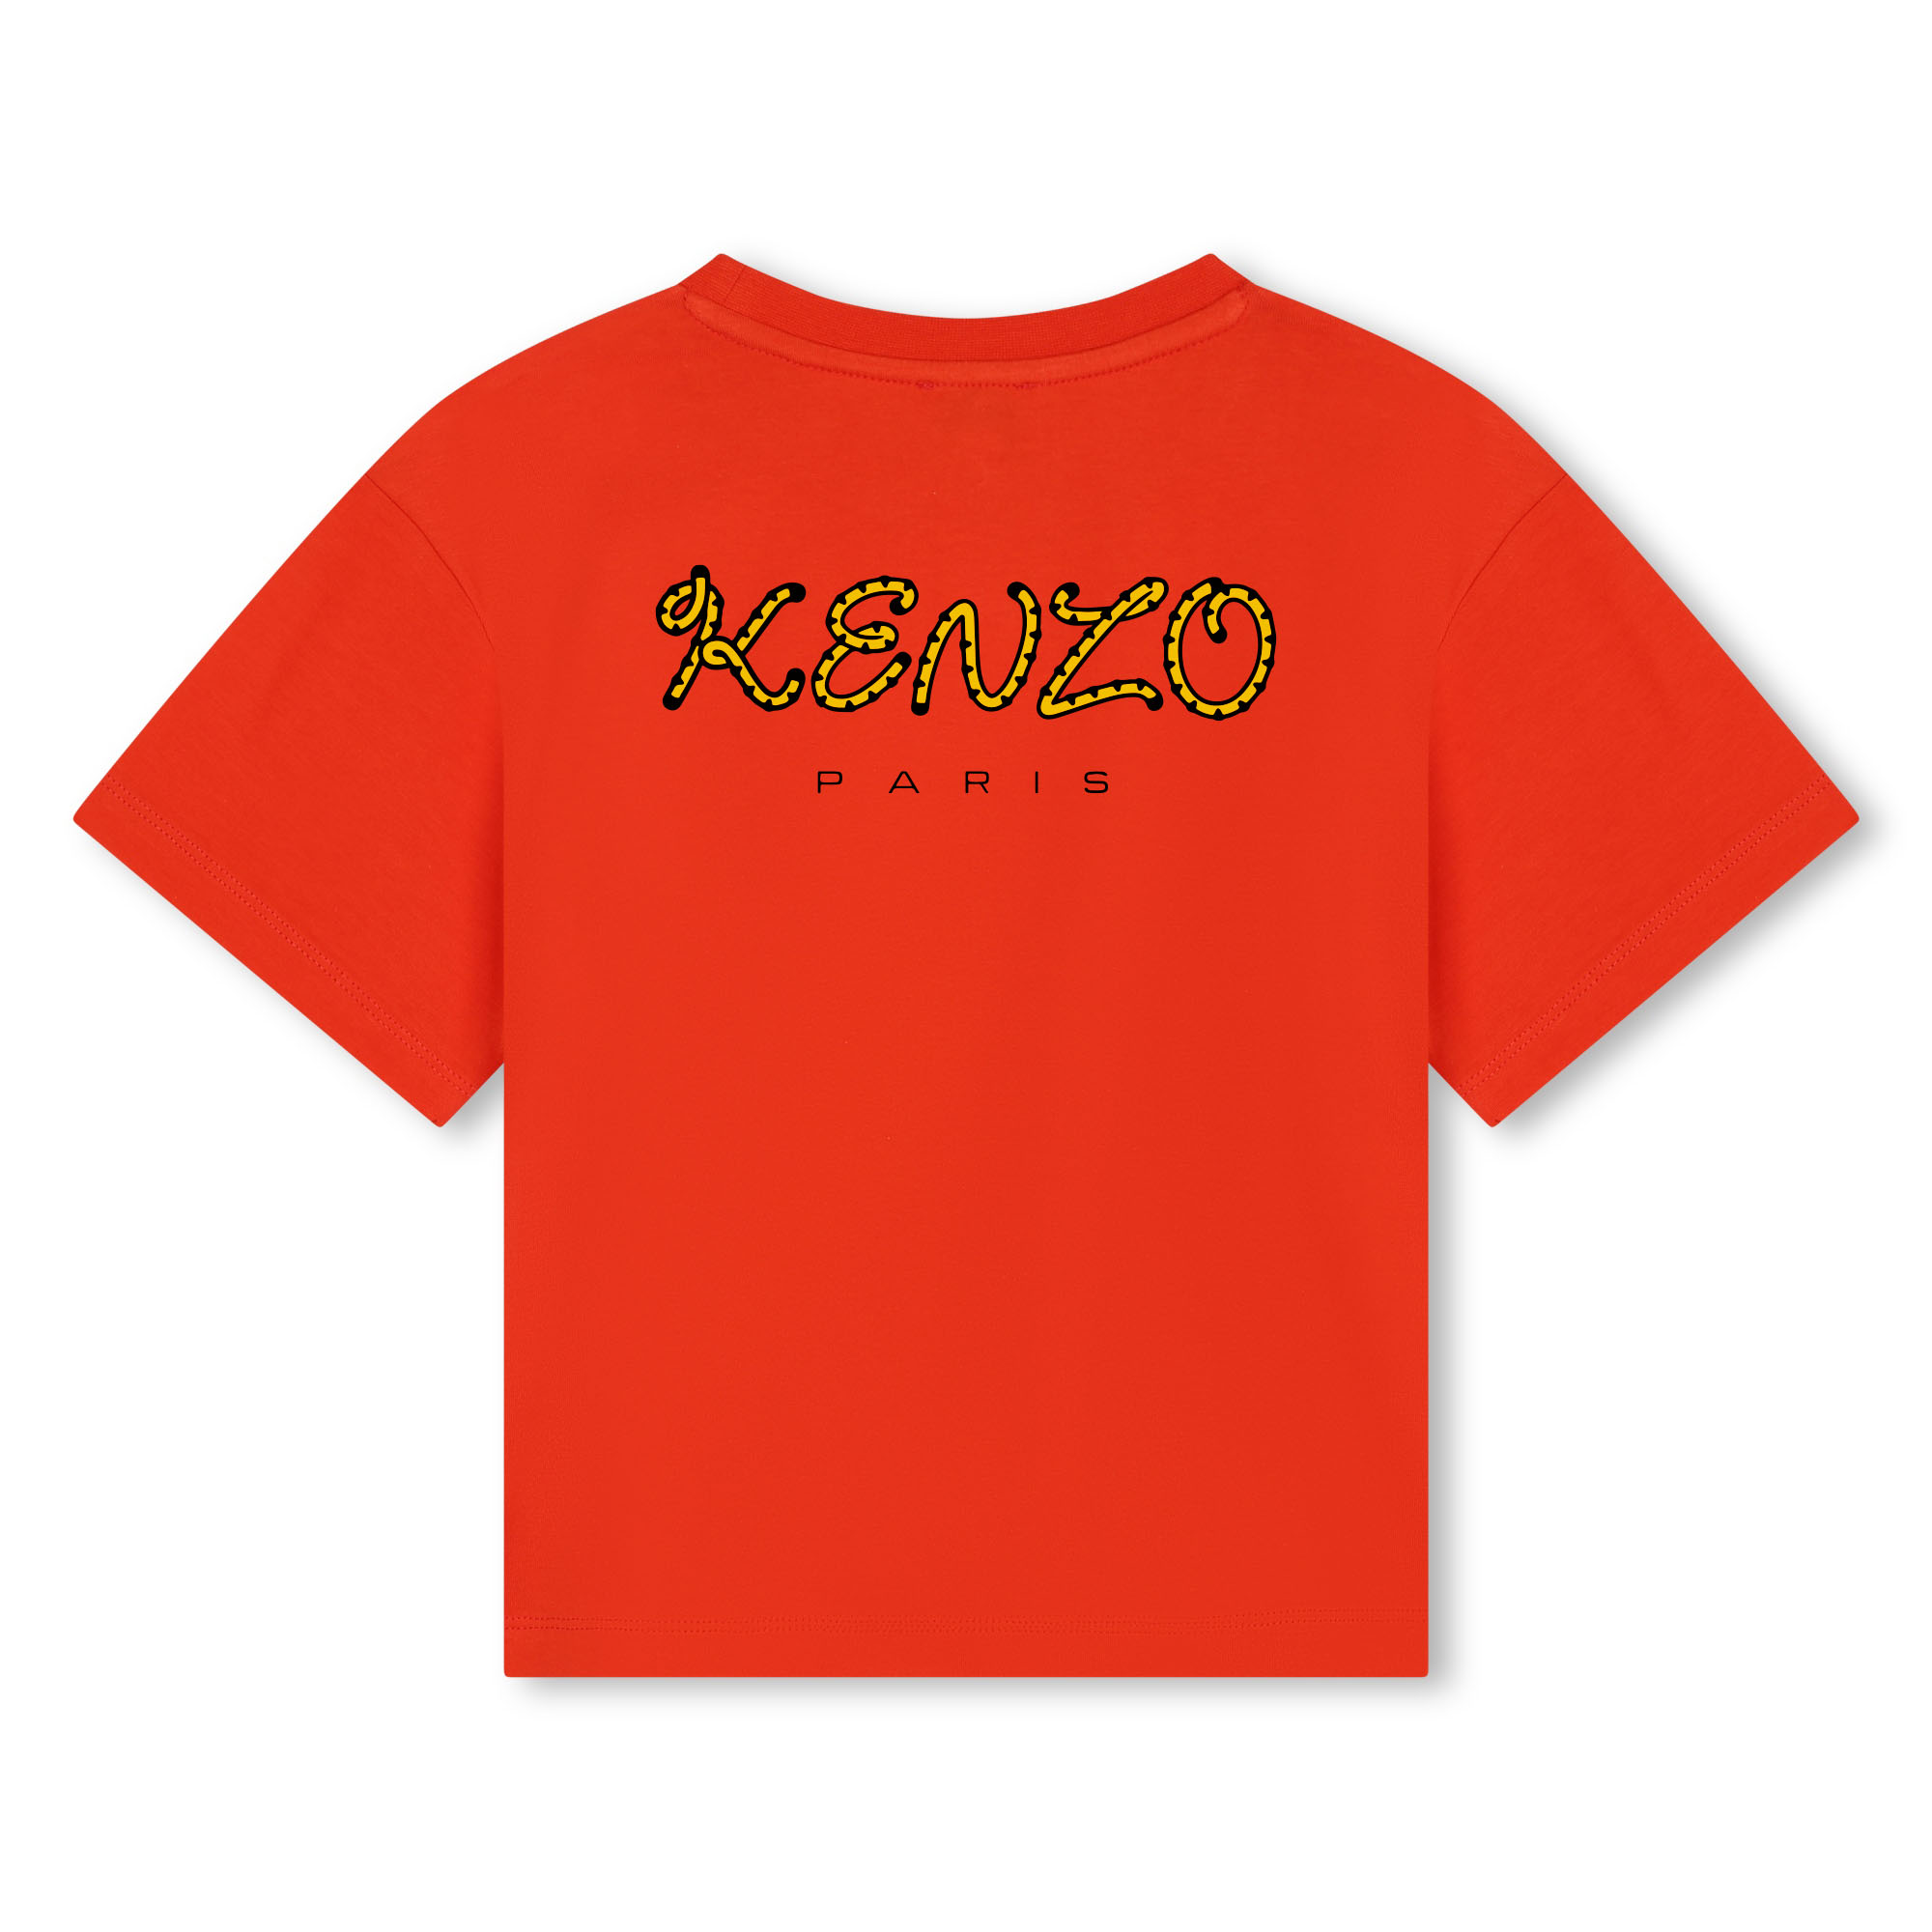 Baumwoll-T-Shirt mit Print KENZO KIDS Für UNISEX